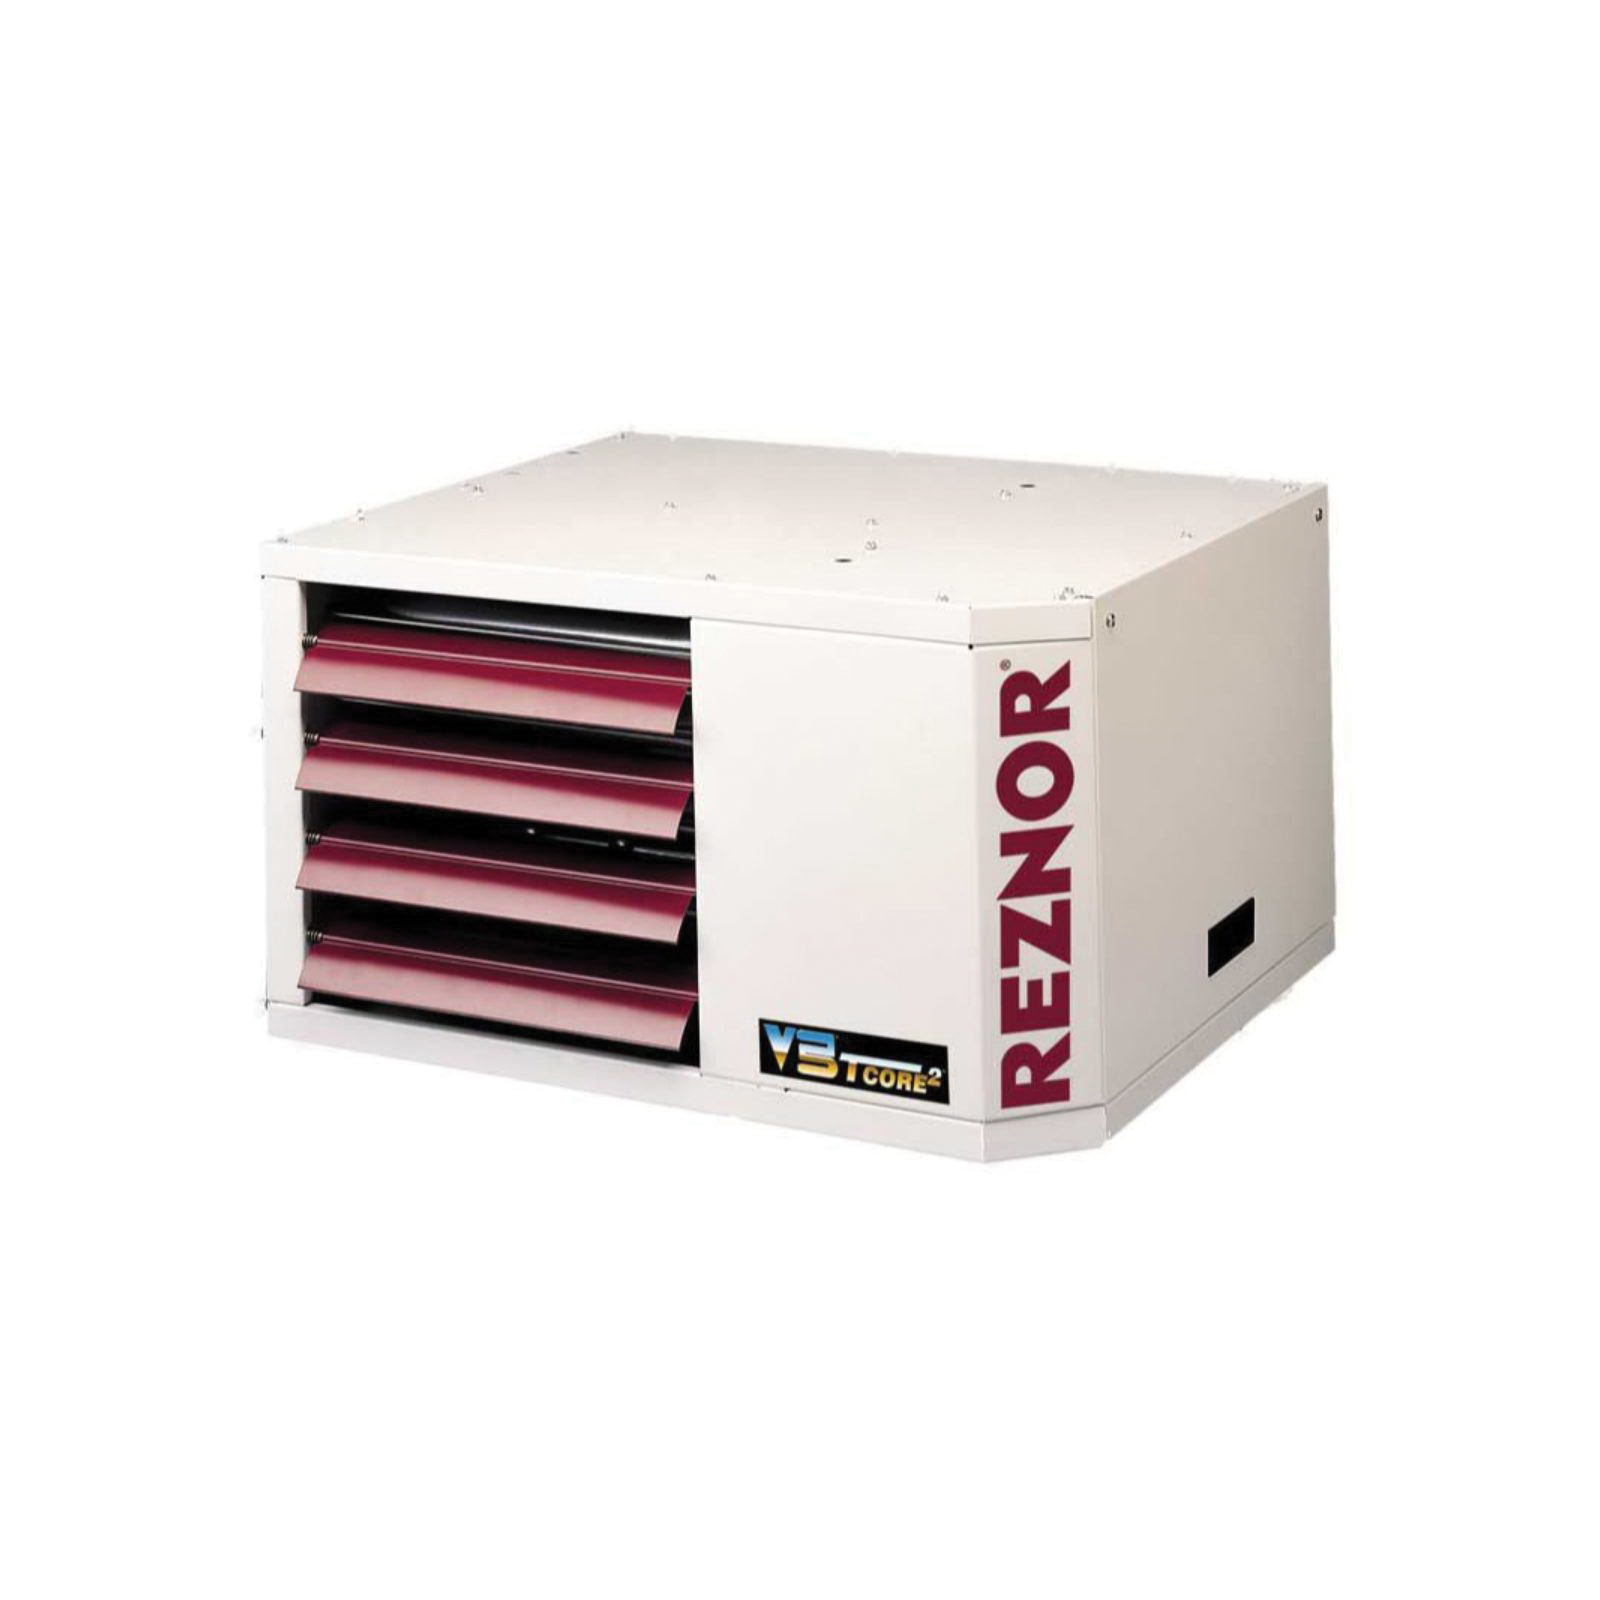 Reznor® V3 UDAP-45 Unit Heater, 115 V, 2.4 A, 155 W, 45000 Btu/hr Input, 37350 Btu/hr Output BTU, 1 -Phase